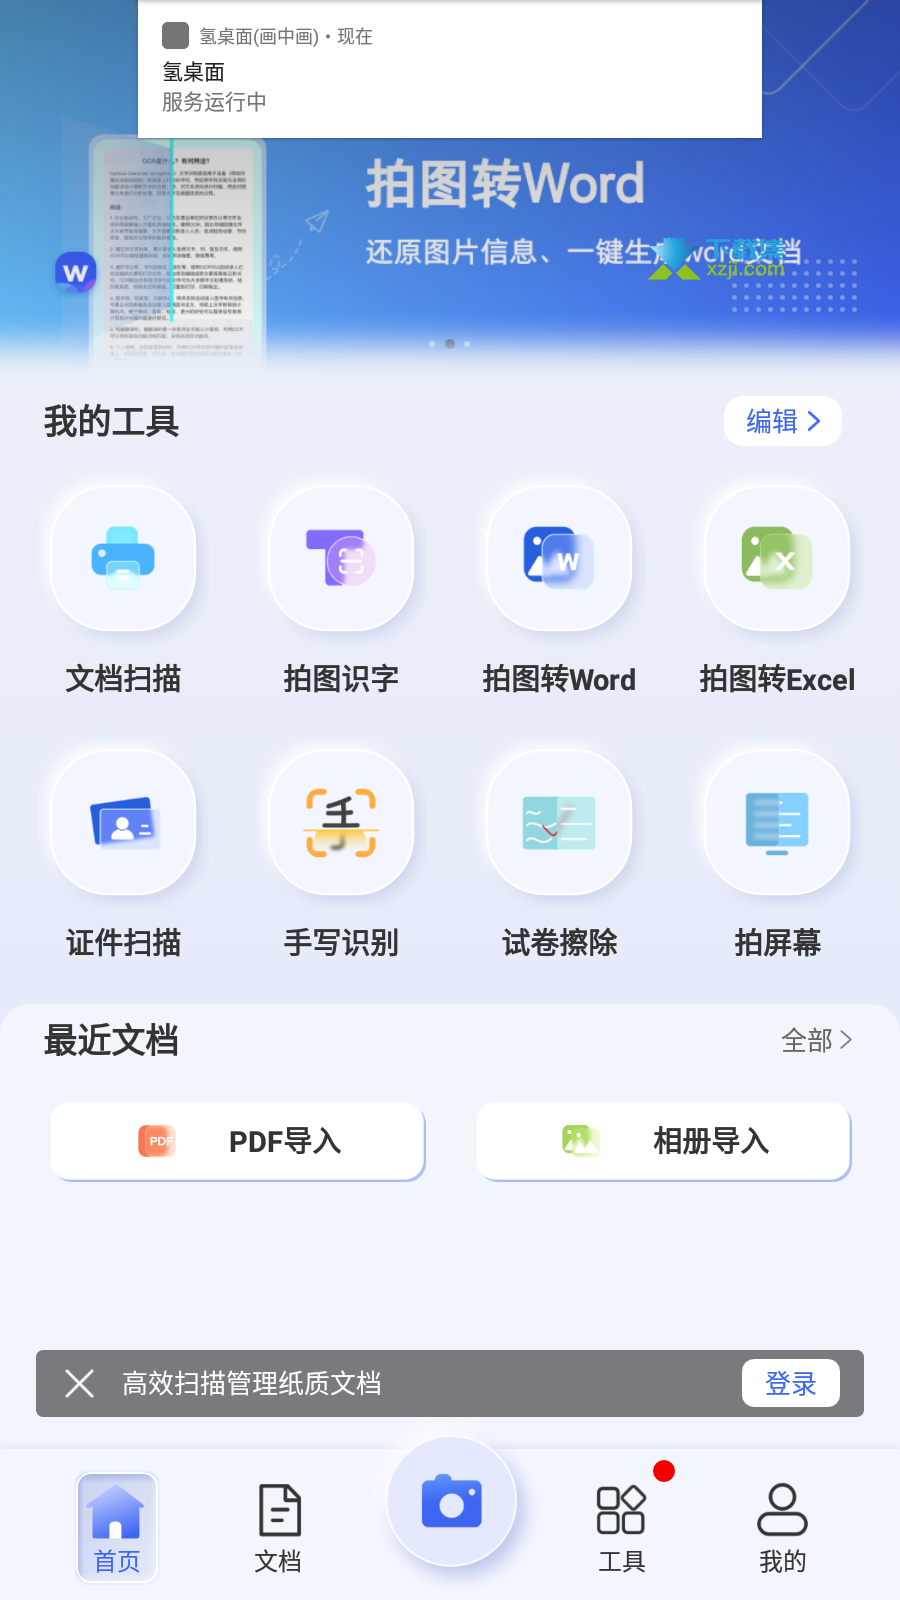 汉王扫描王app界面1